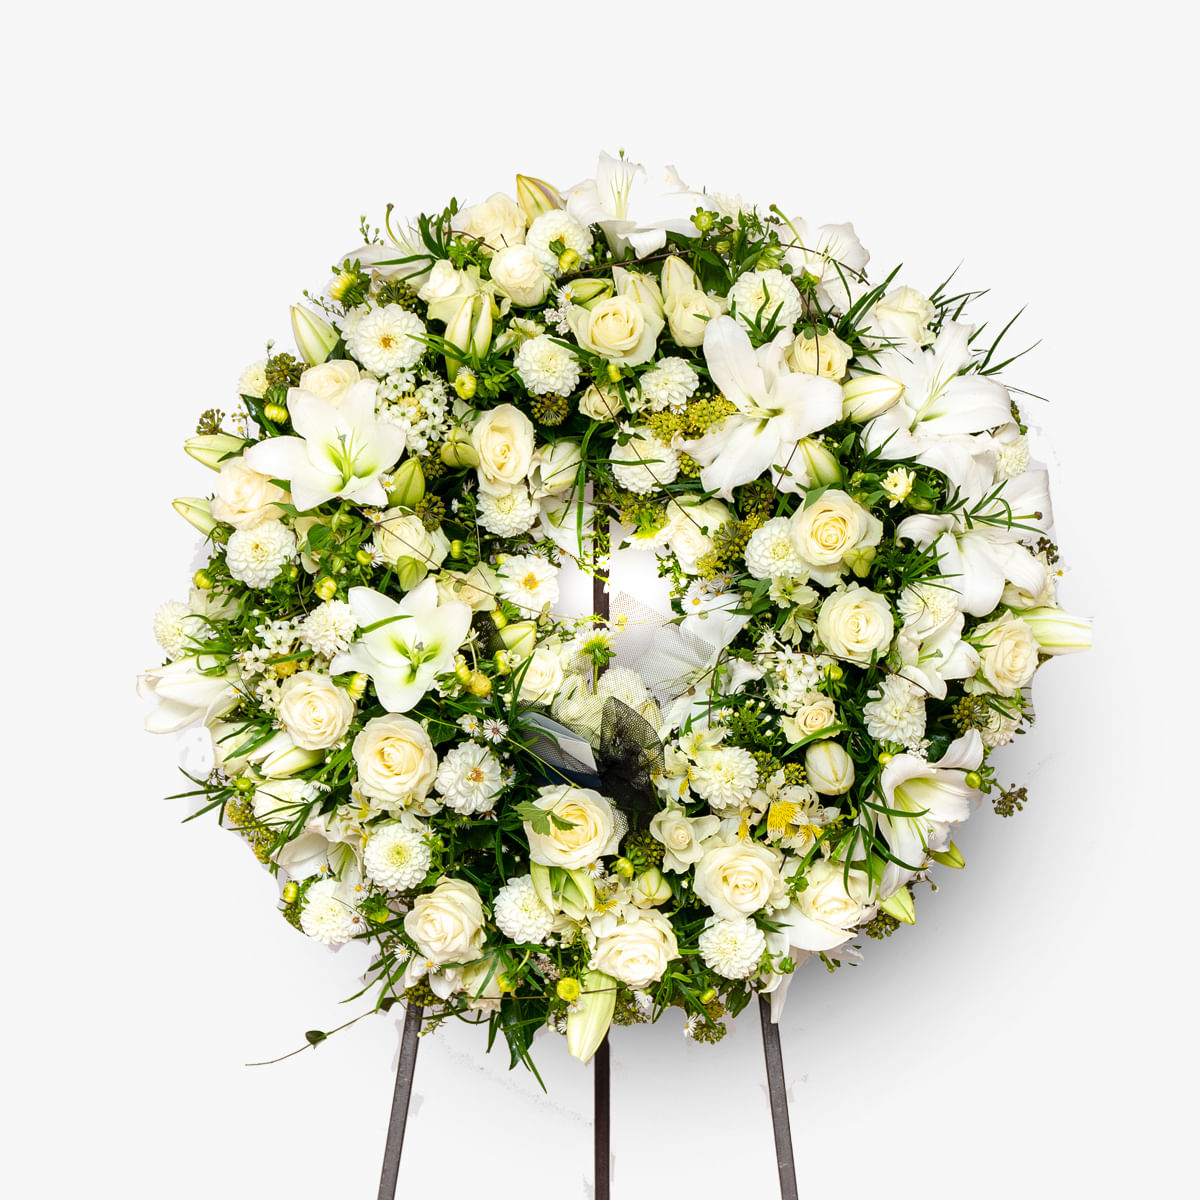 Coroana funerara cu flori albe albe